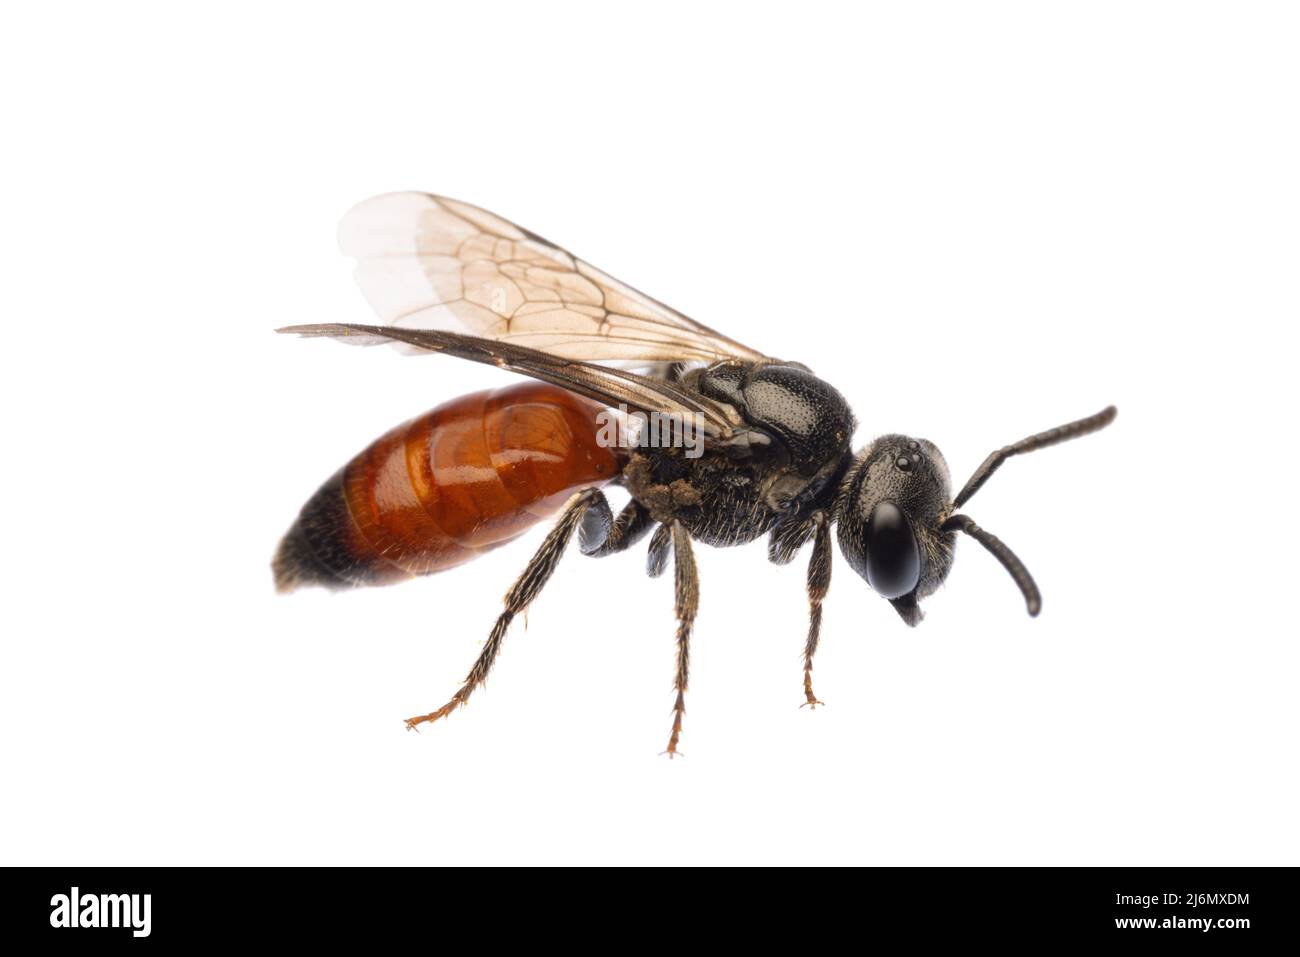 Insectes d'europe - abeilles: Vue latérale de l'abeille sanguine Specodes (blutbiene allemand) isolé sur fond blanc Banque D'Images